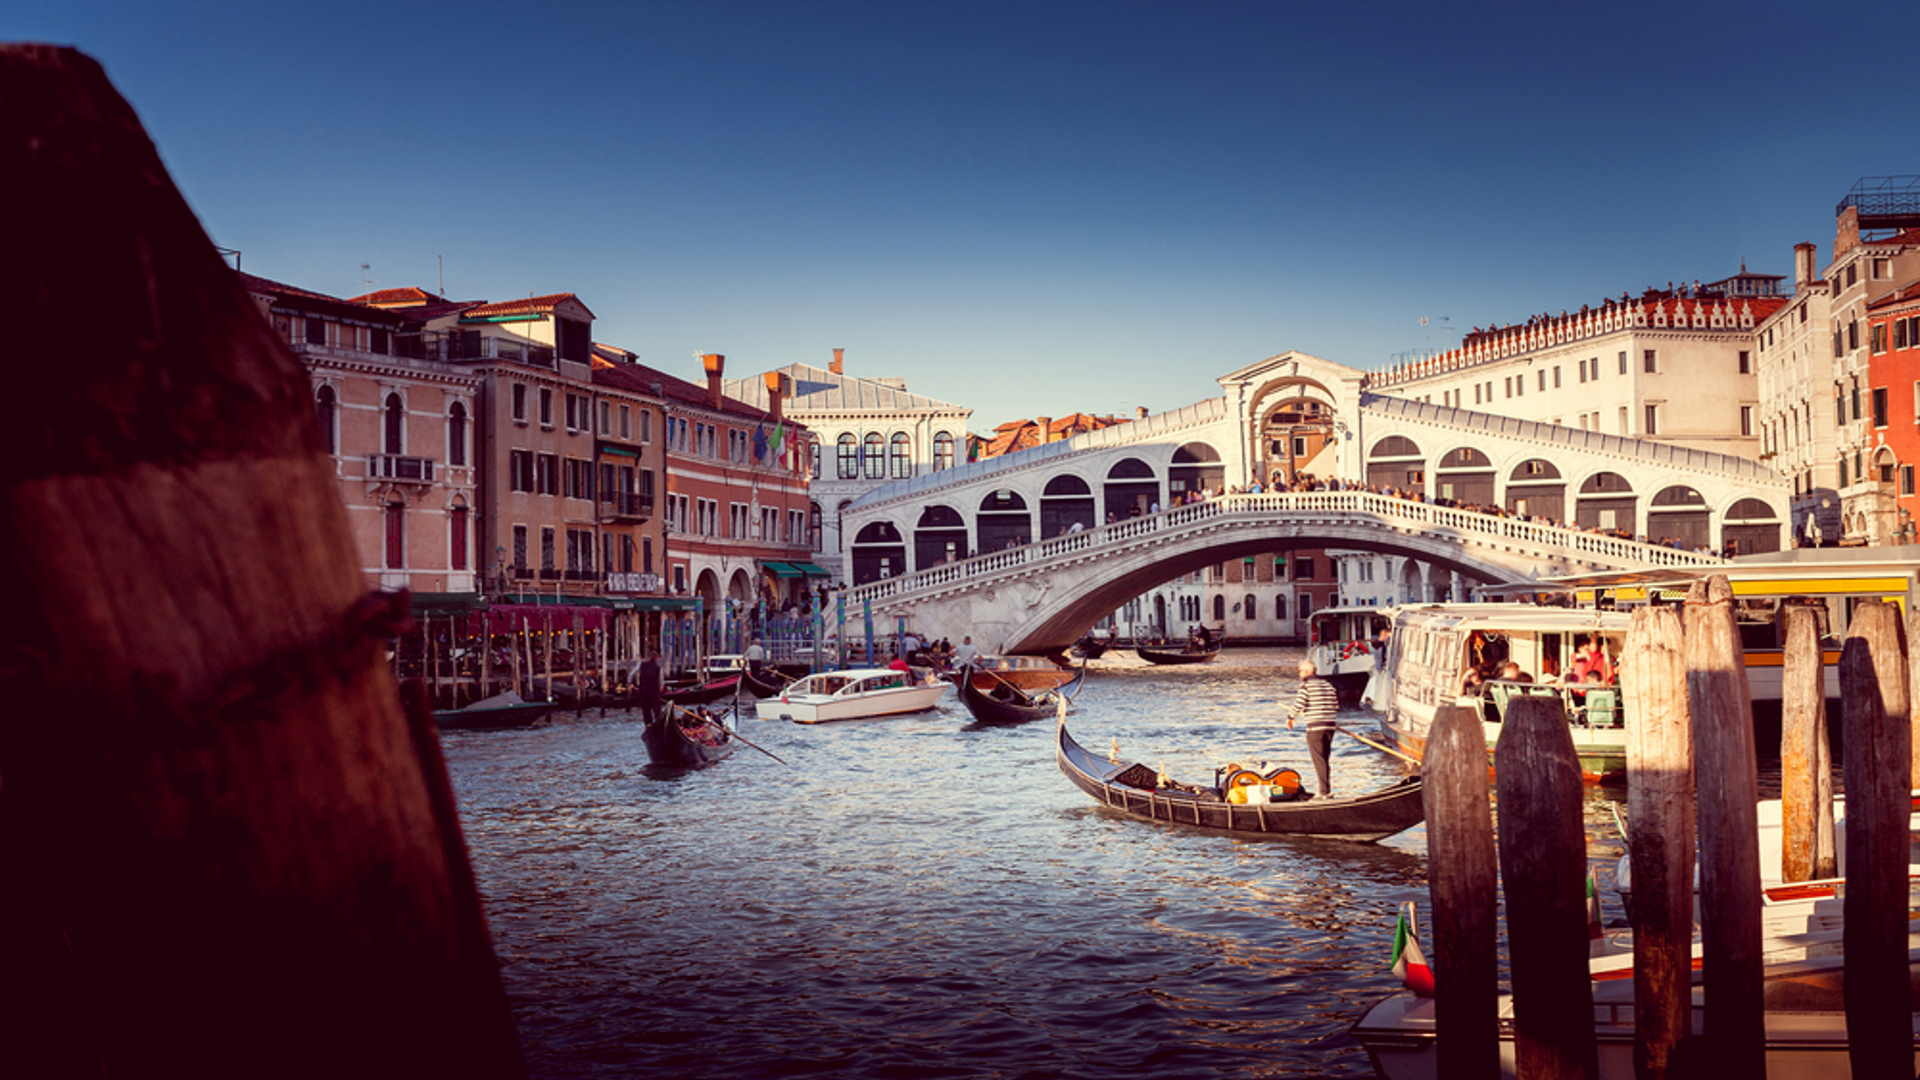 Gratis reisefhrer fr Venedig, Digitaler stadtfhrer, Venice 2022, Travel guide, 1920x1080 Full HD Desktop